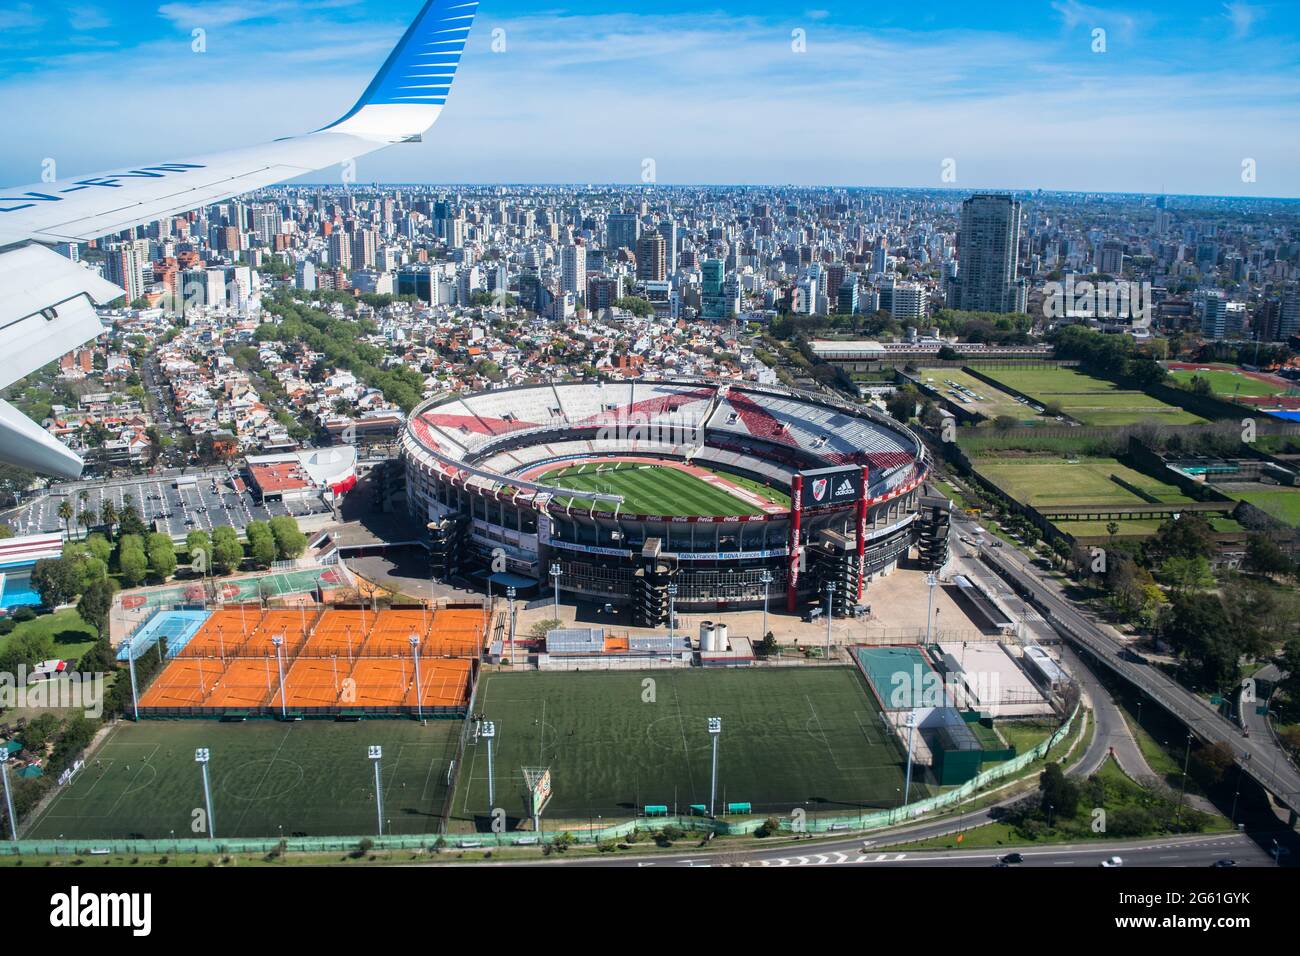 Vista aérea del estadio 'El Monumental', donde juega River Plate, un equipo  de fútbol muy importante de Buenos Aires, Argentina Fotografía de stock -  Alamy